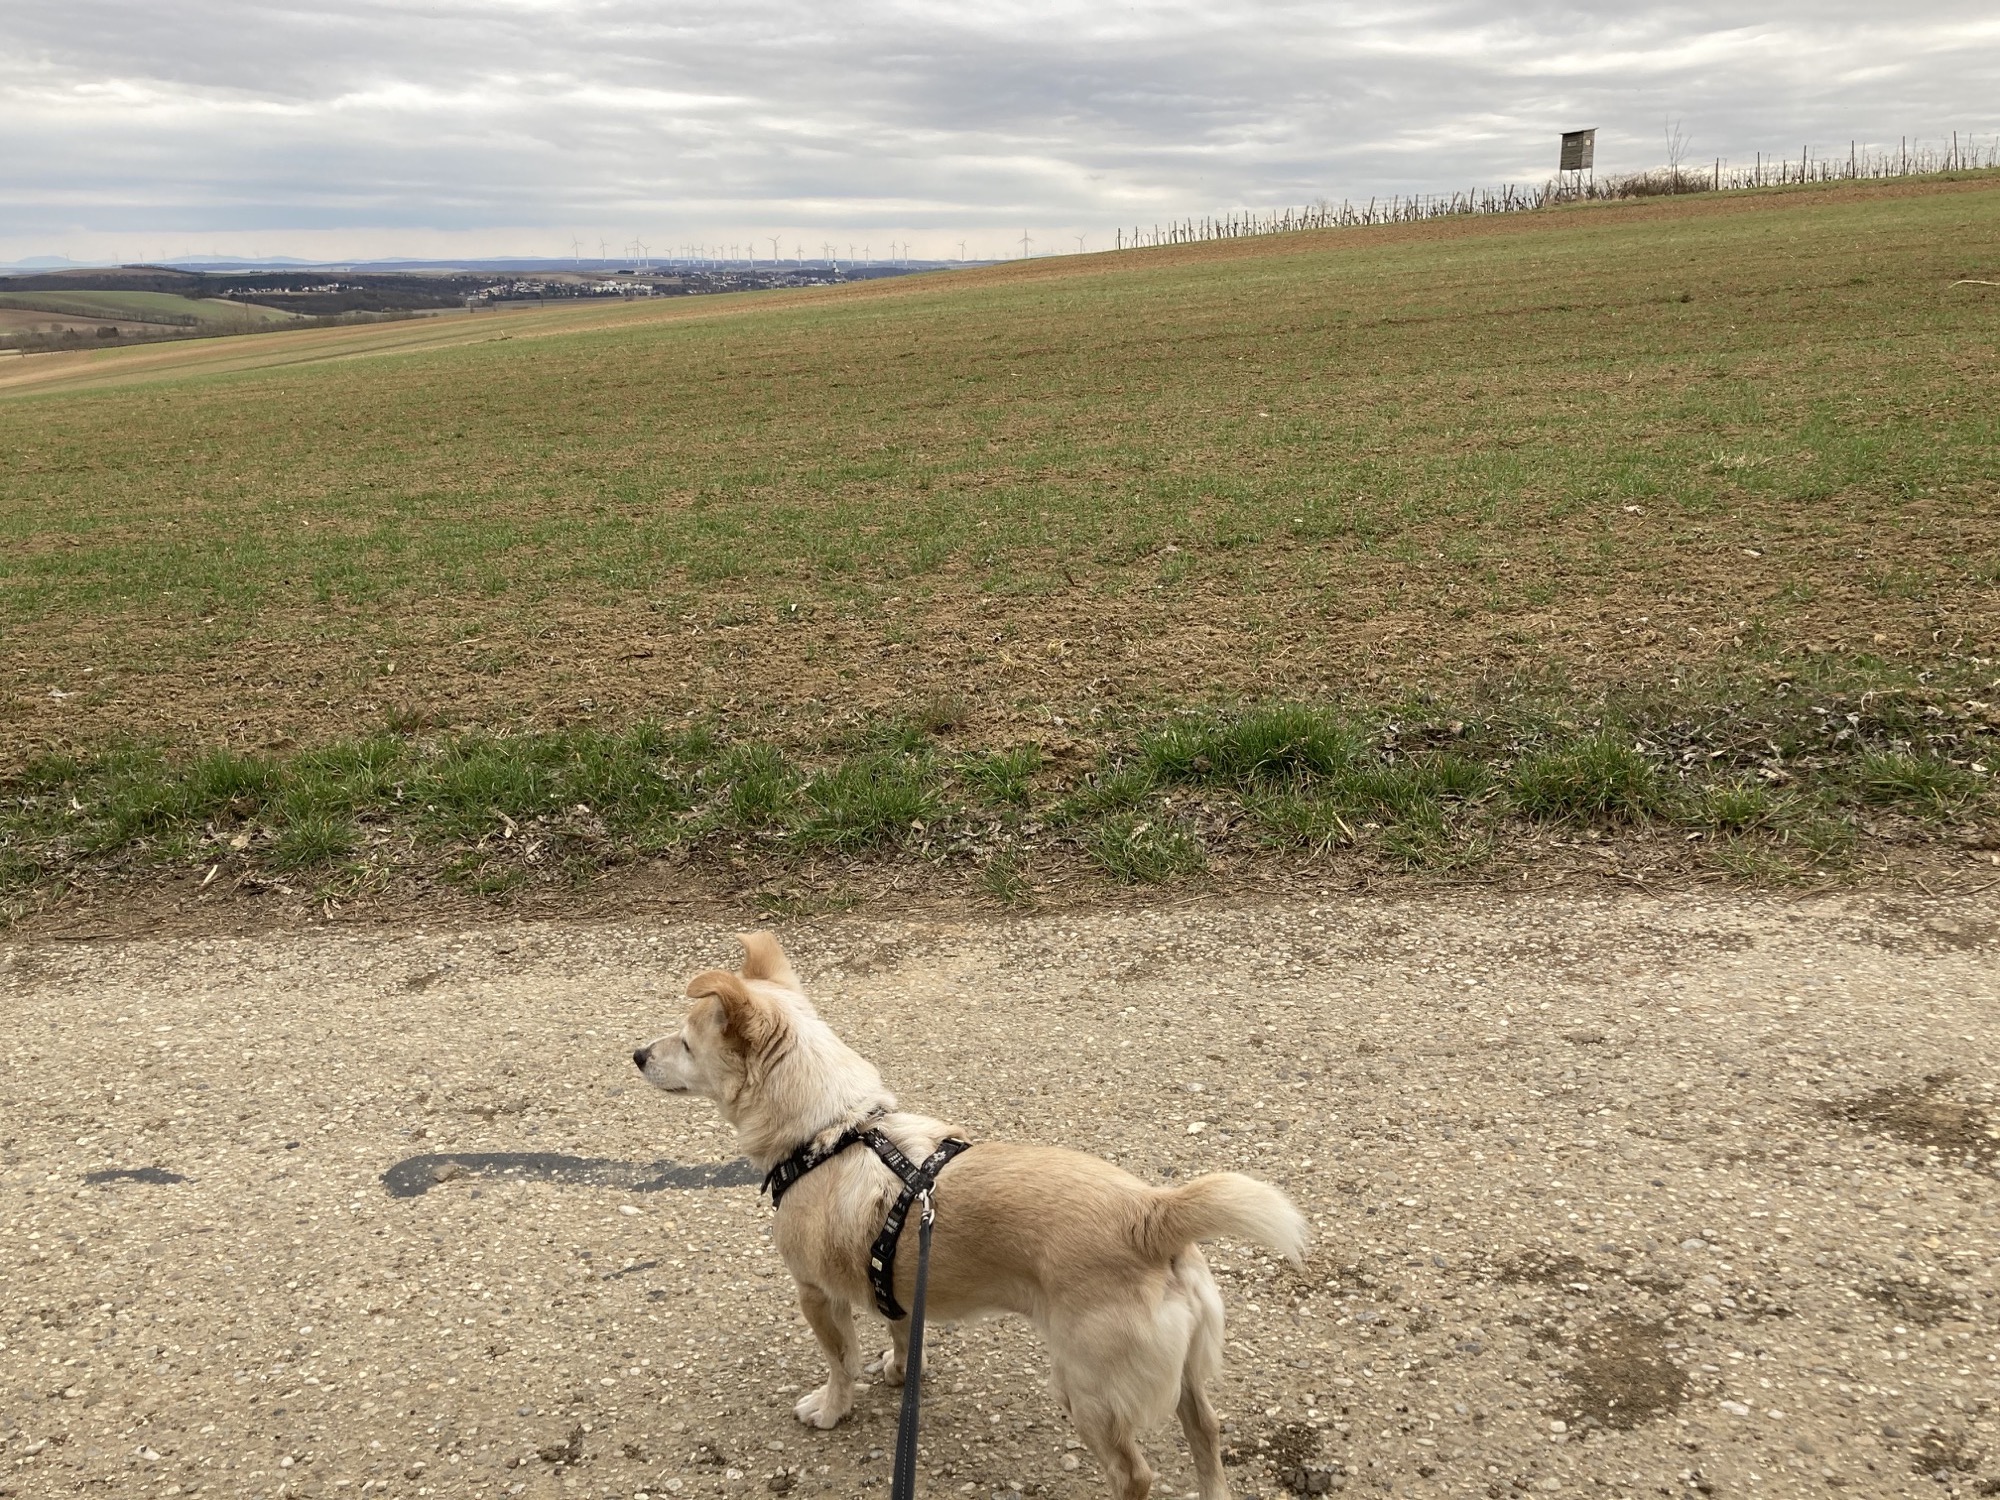 Hund Melly am Feldweg, dahinter ein Hochstand und Weinreben, ganz in der Ferne Windräder